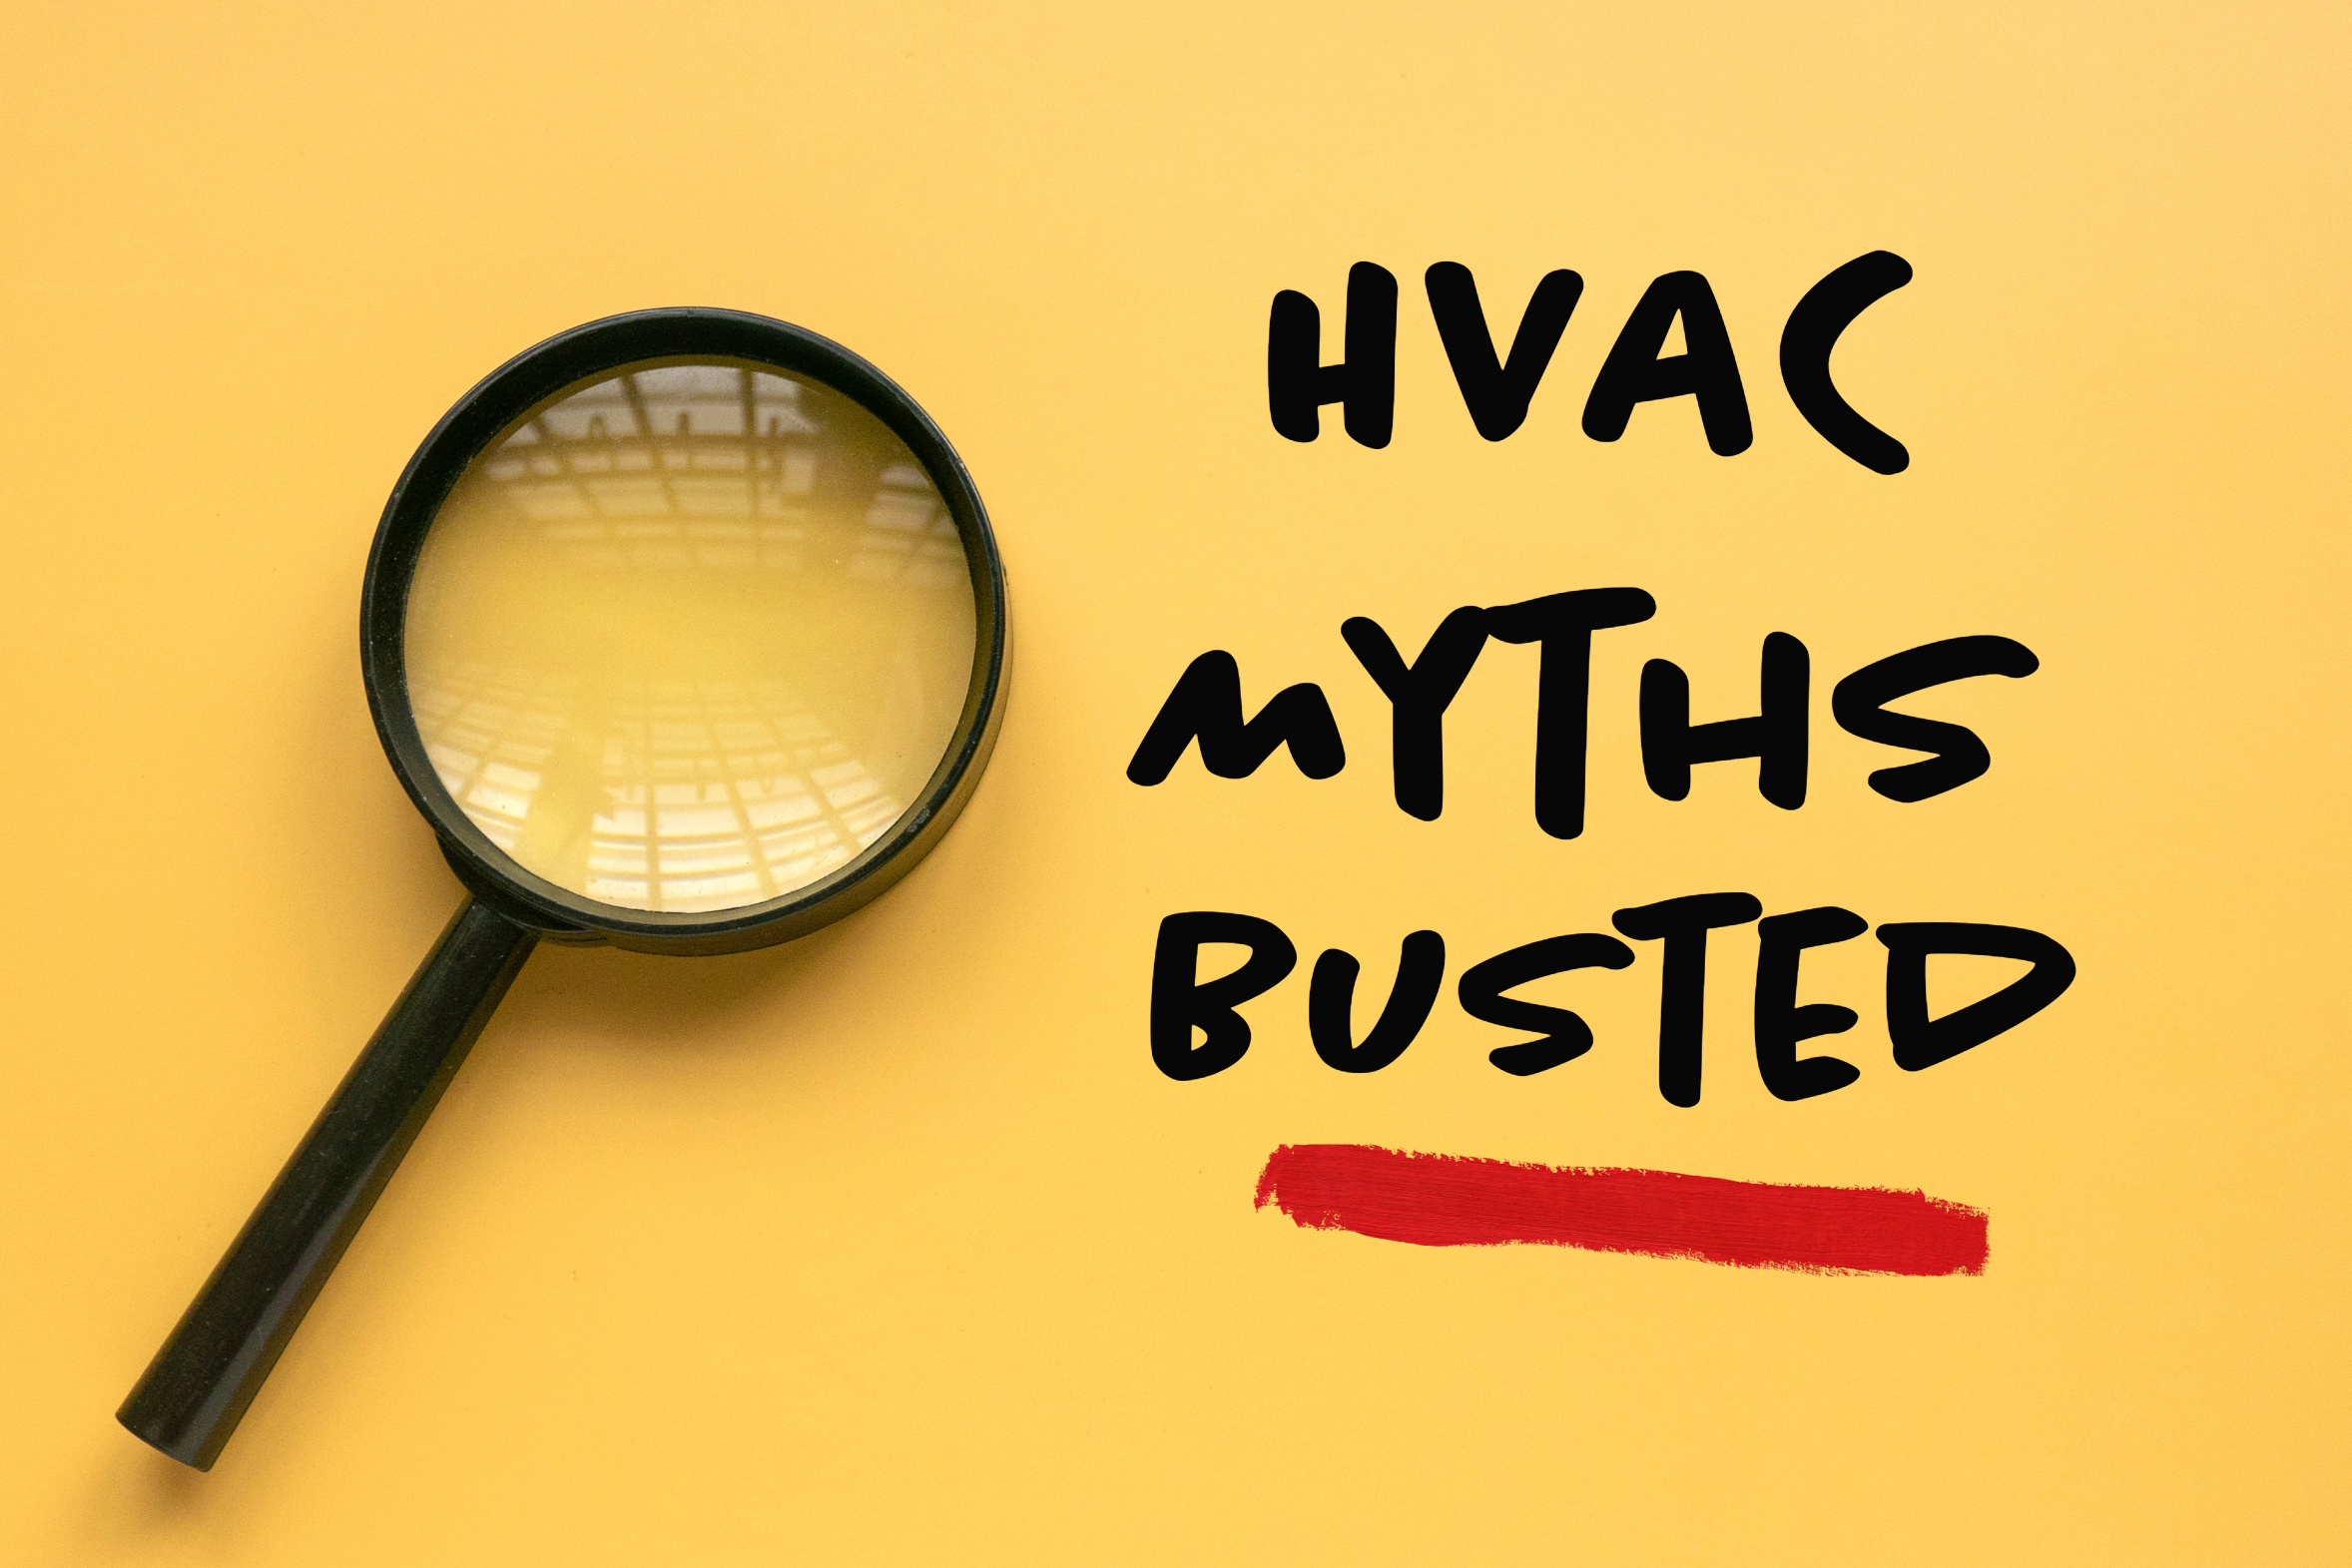 HVAC blog on common HVAC myths.